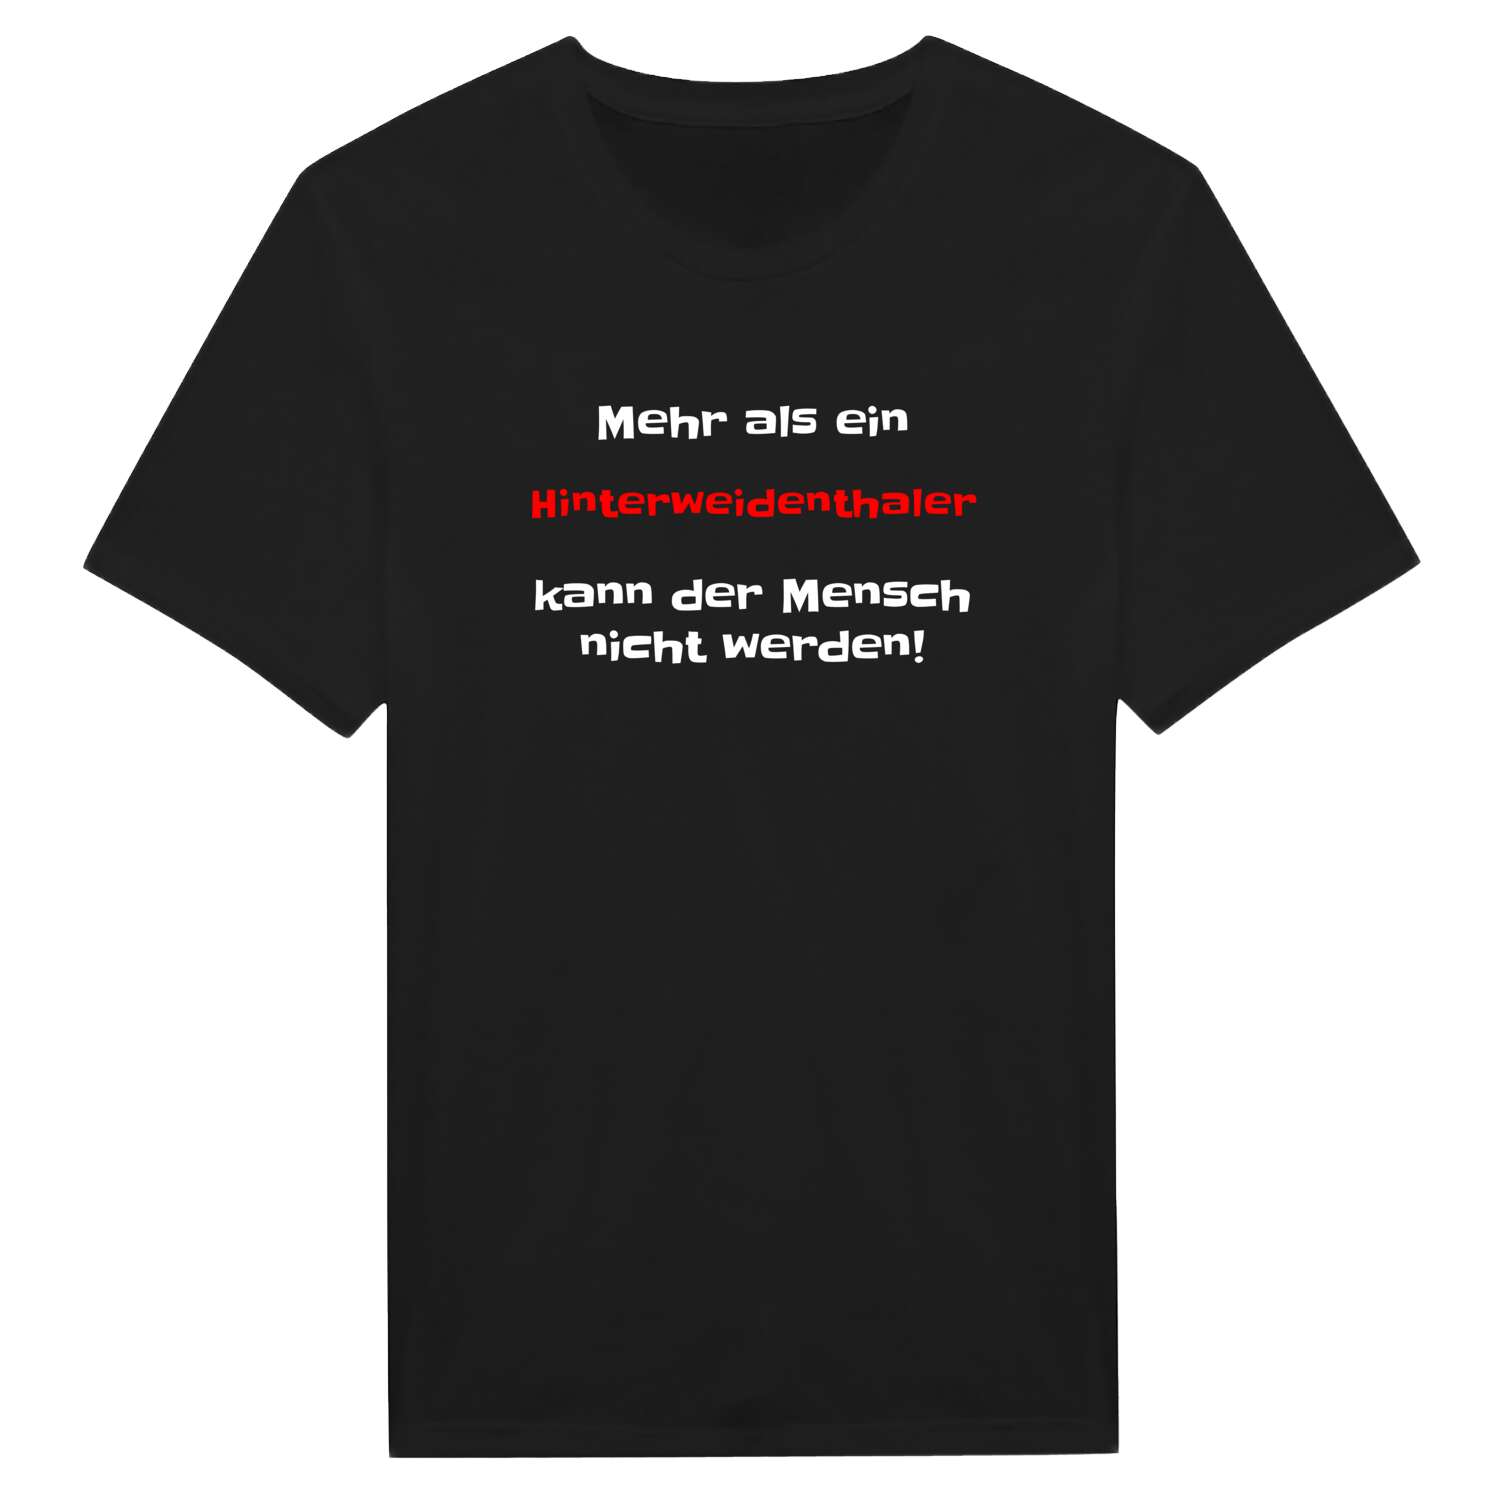 Hinterweidenthal T-Shirt »Mehr als ein«